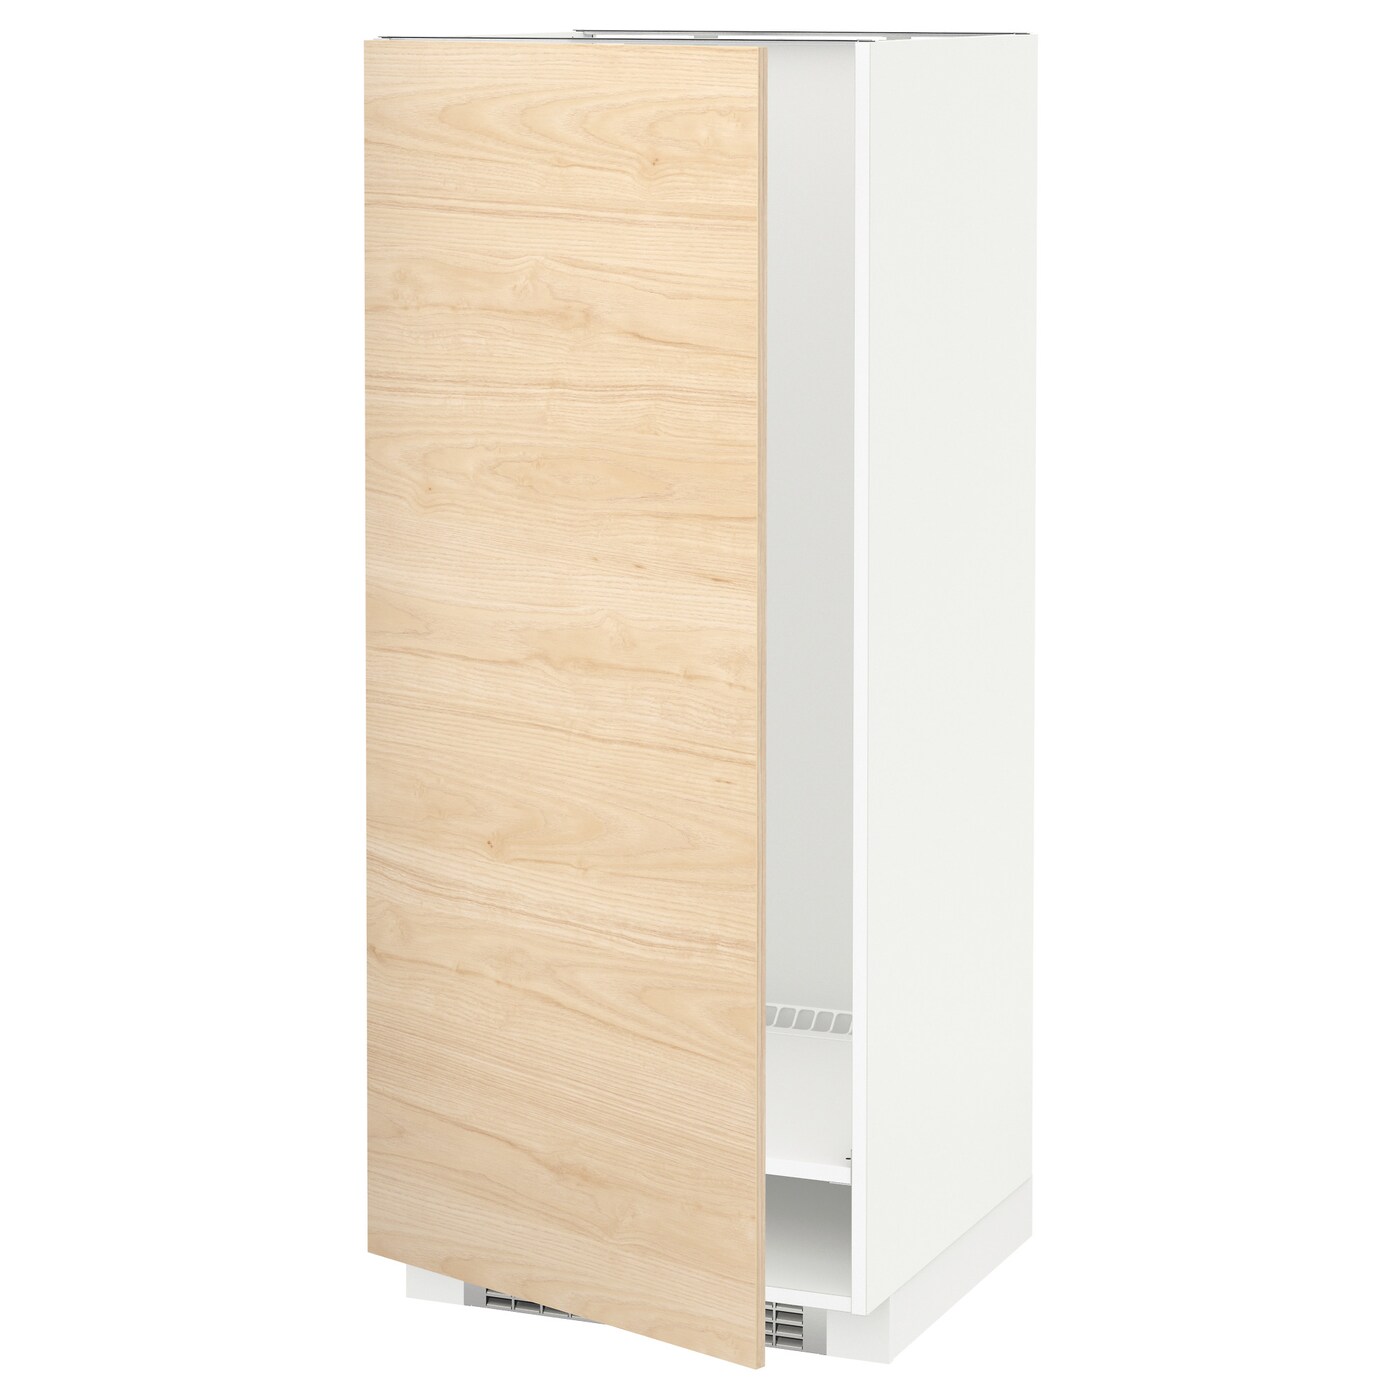 Напольный шкаф - IKEA METOD, 148x62x60см, белый/светлый ясень, МЕТОД ИКЕА